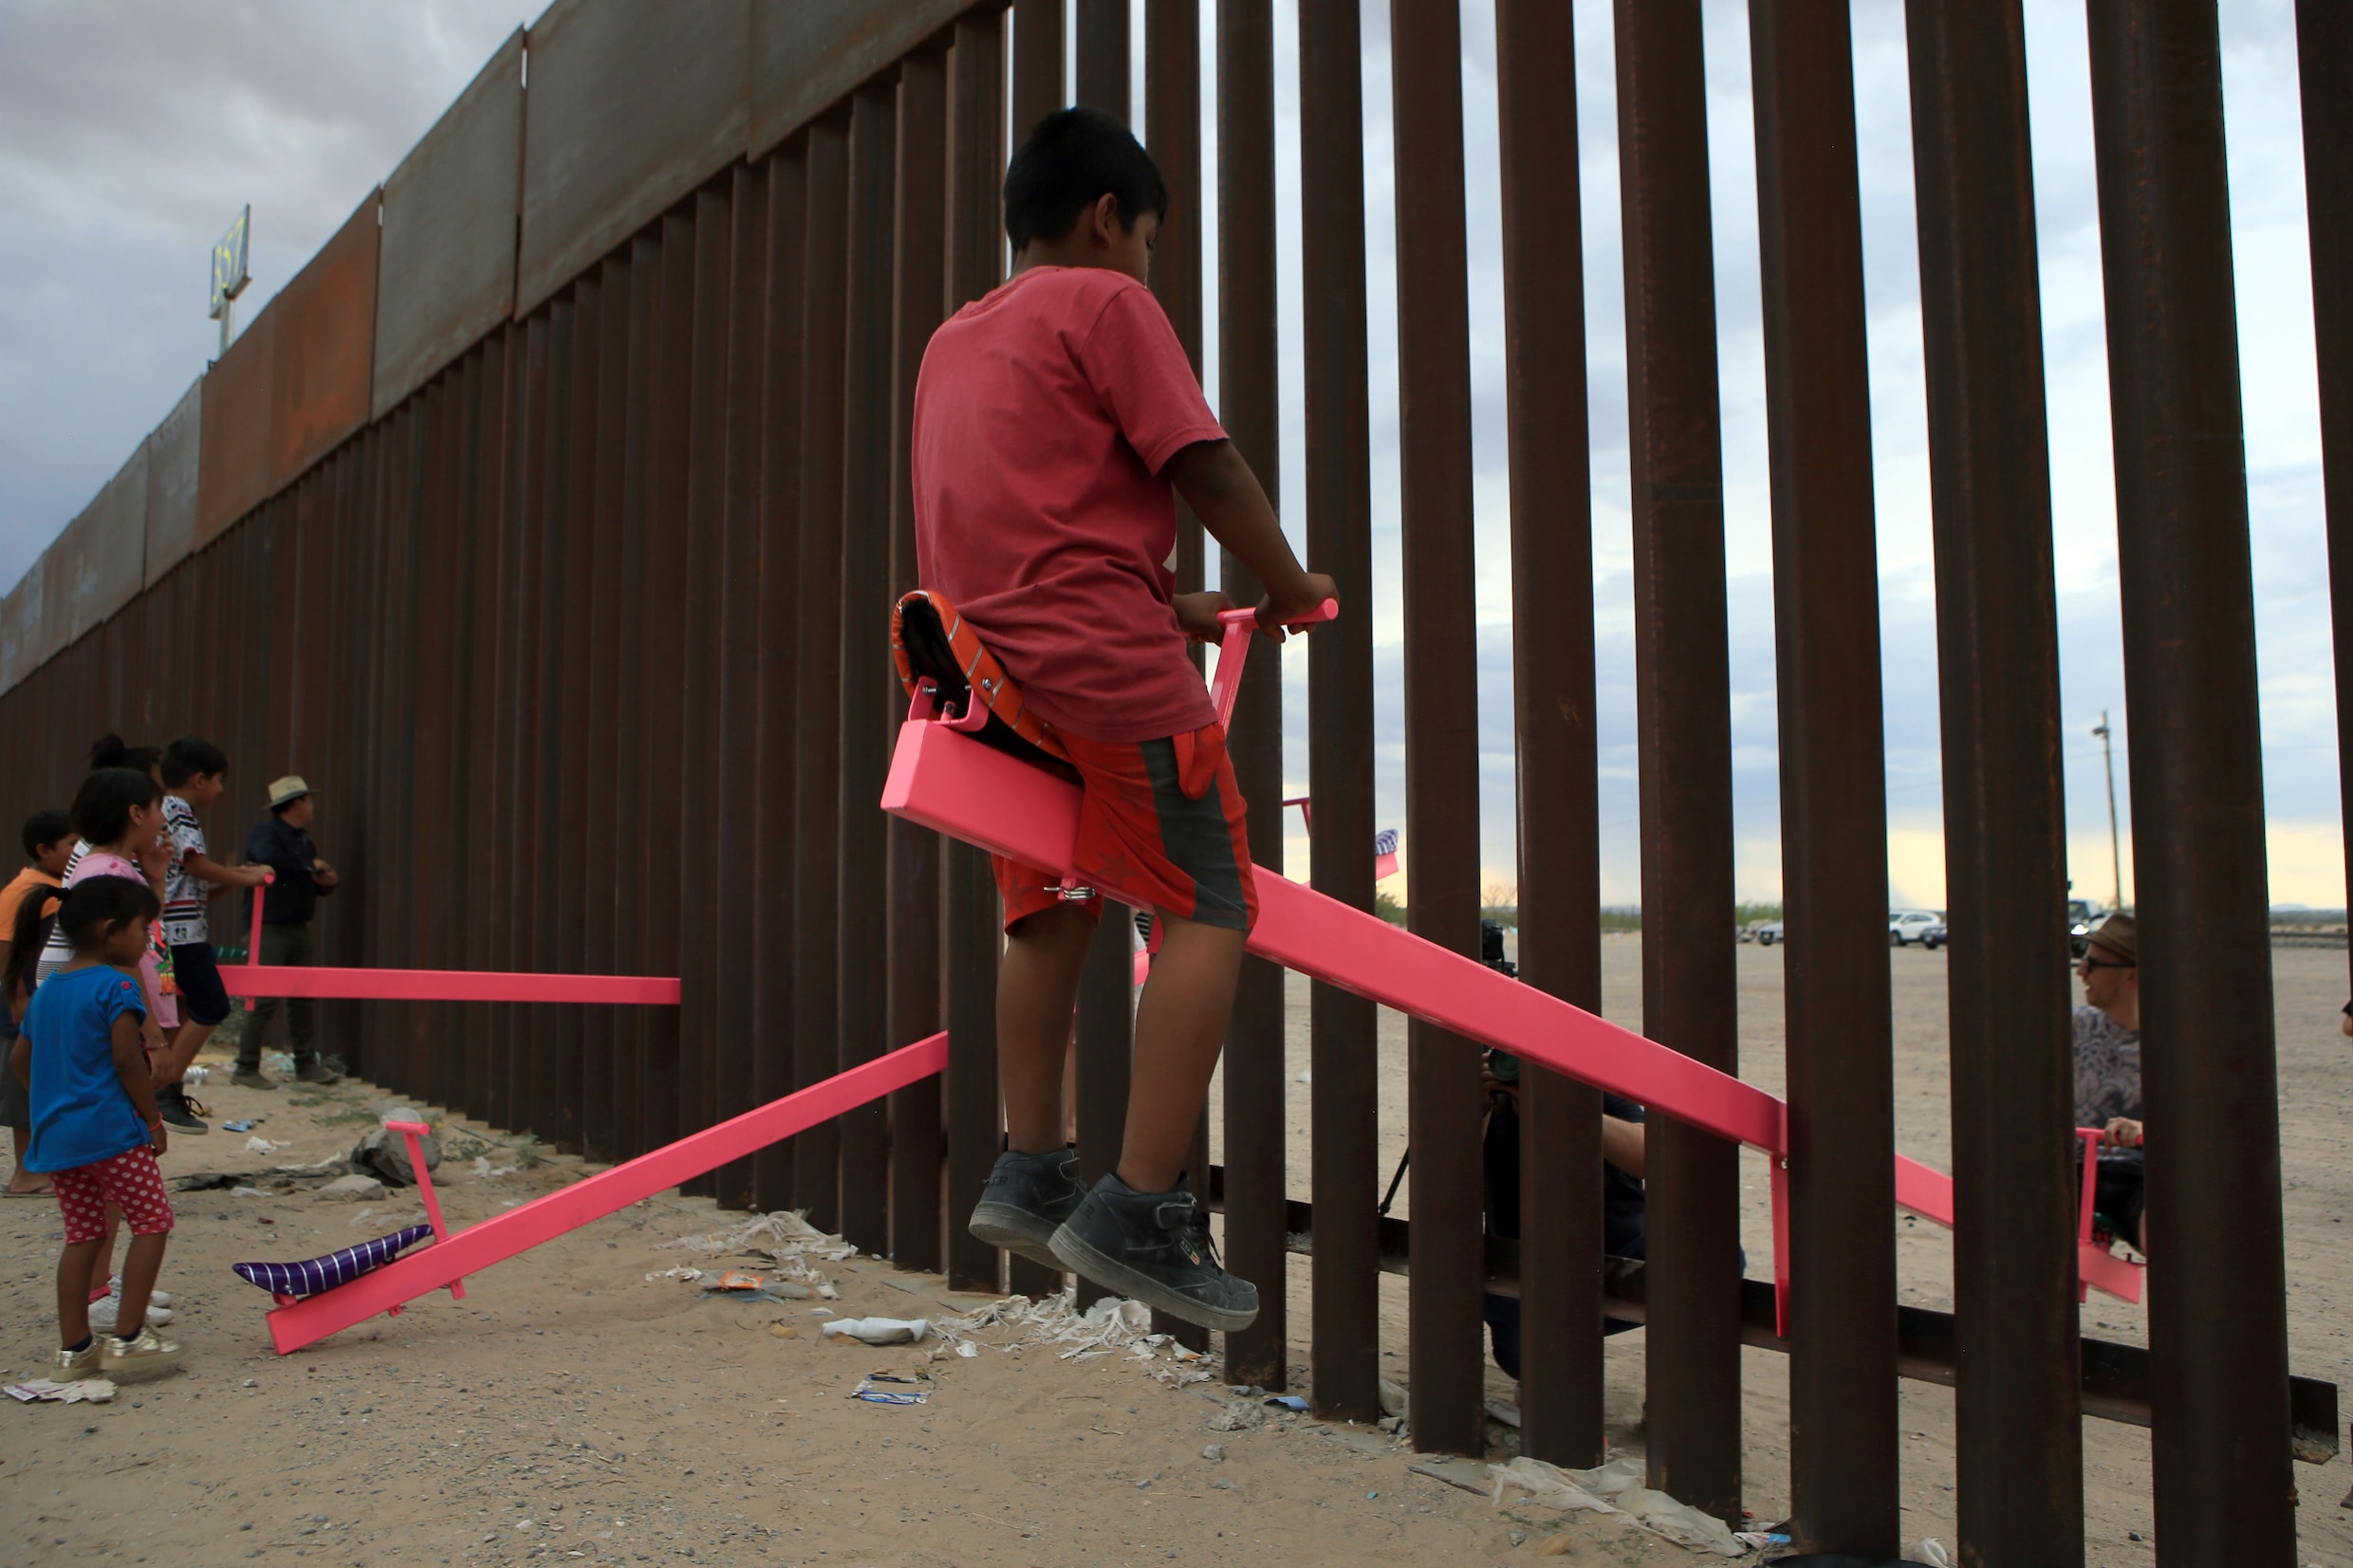 Kunstenaars maakten een wip op de muur tussen Mexico en de VS. Daar winnen ze nu een prestigieuze designprijs mee